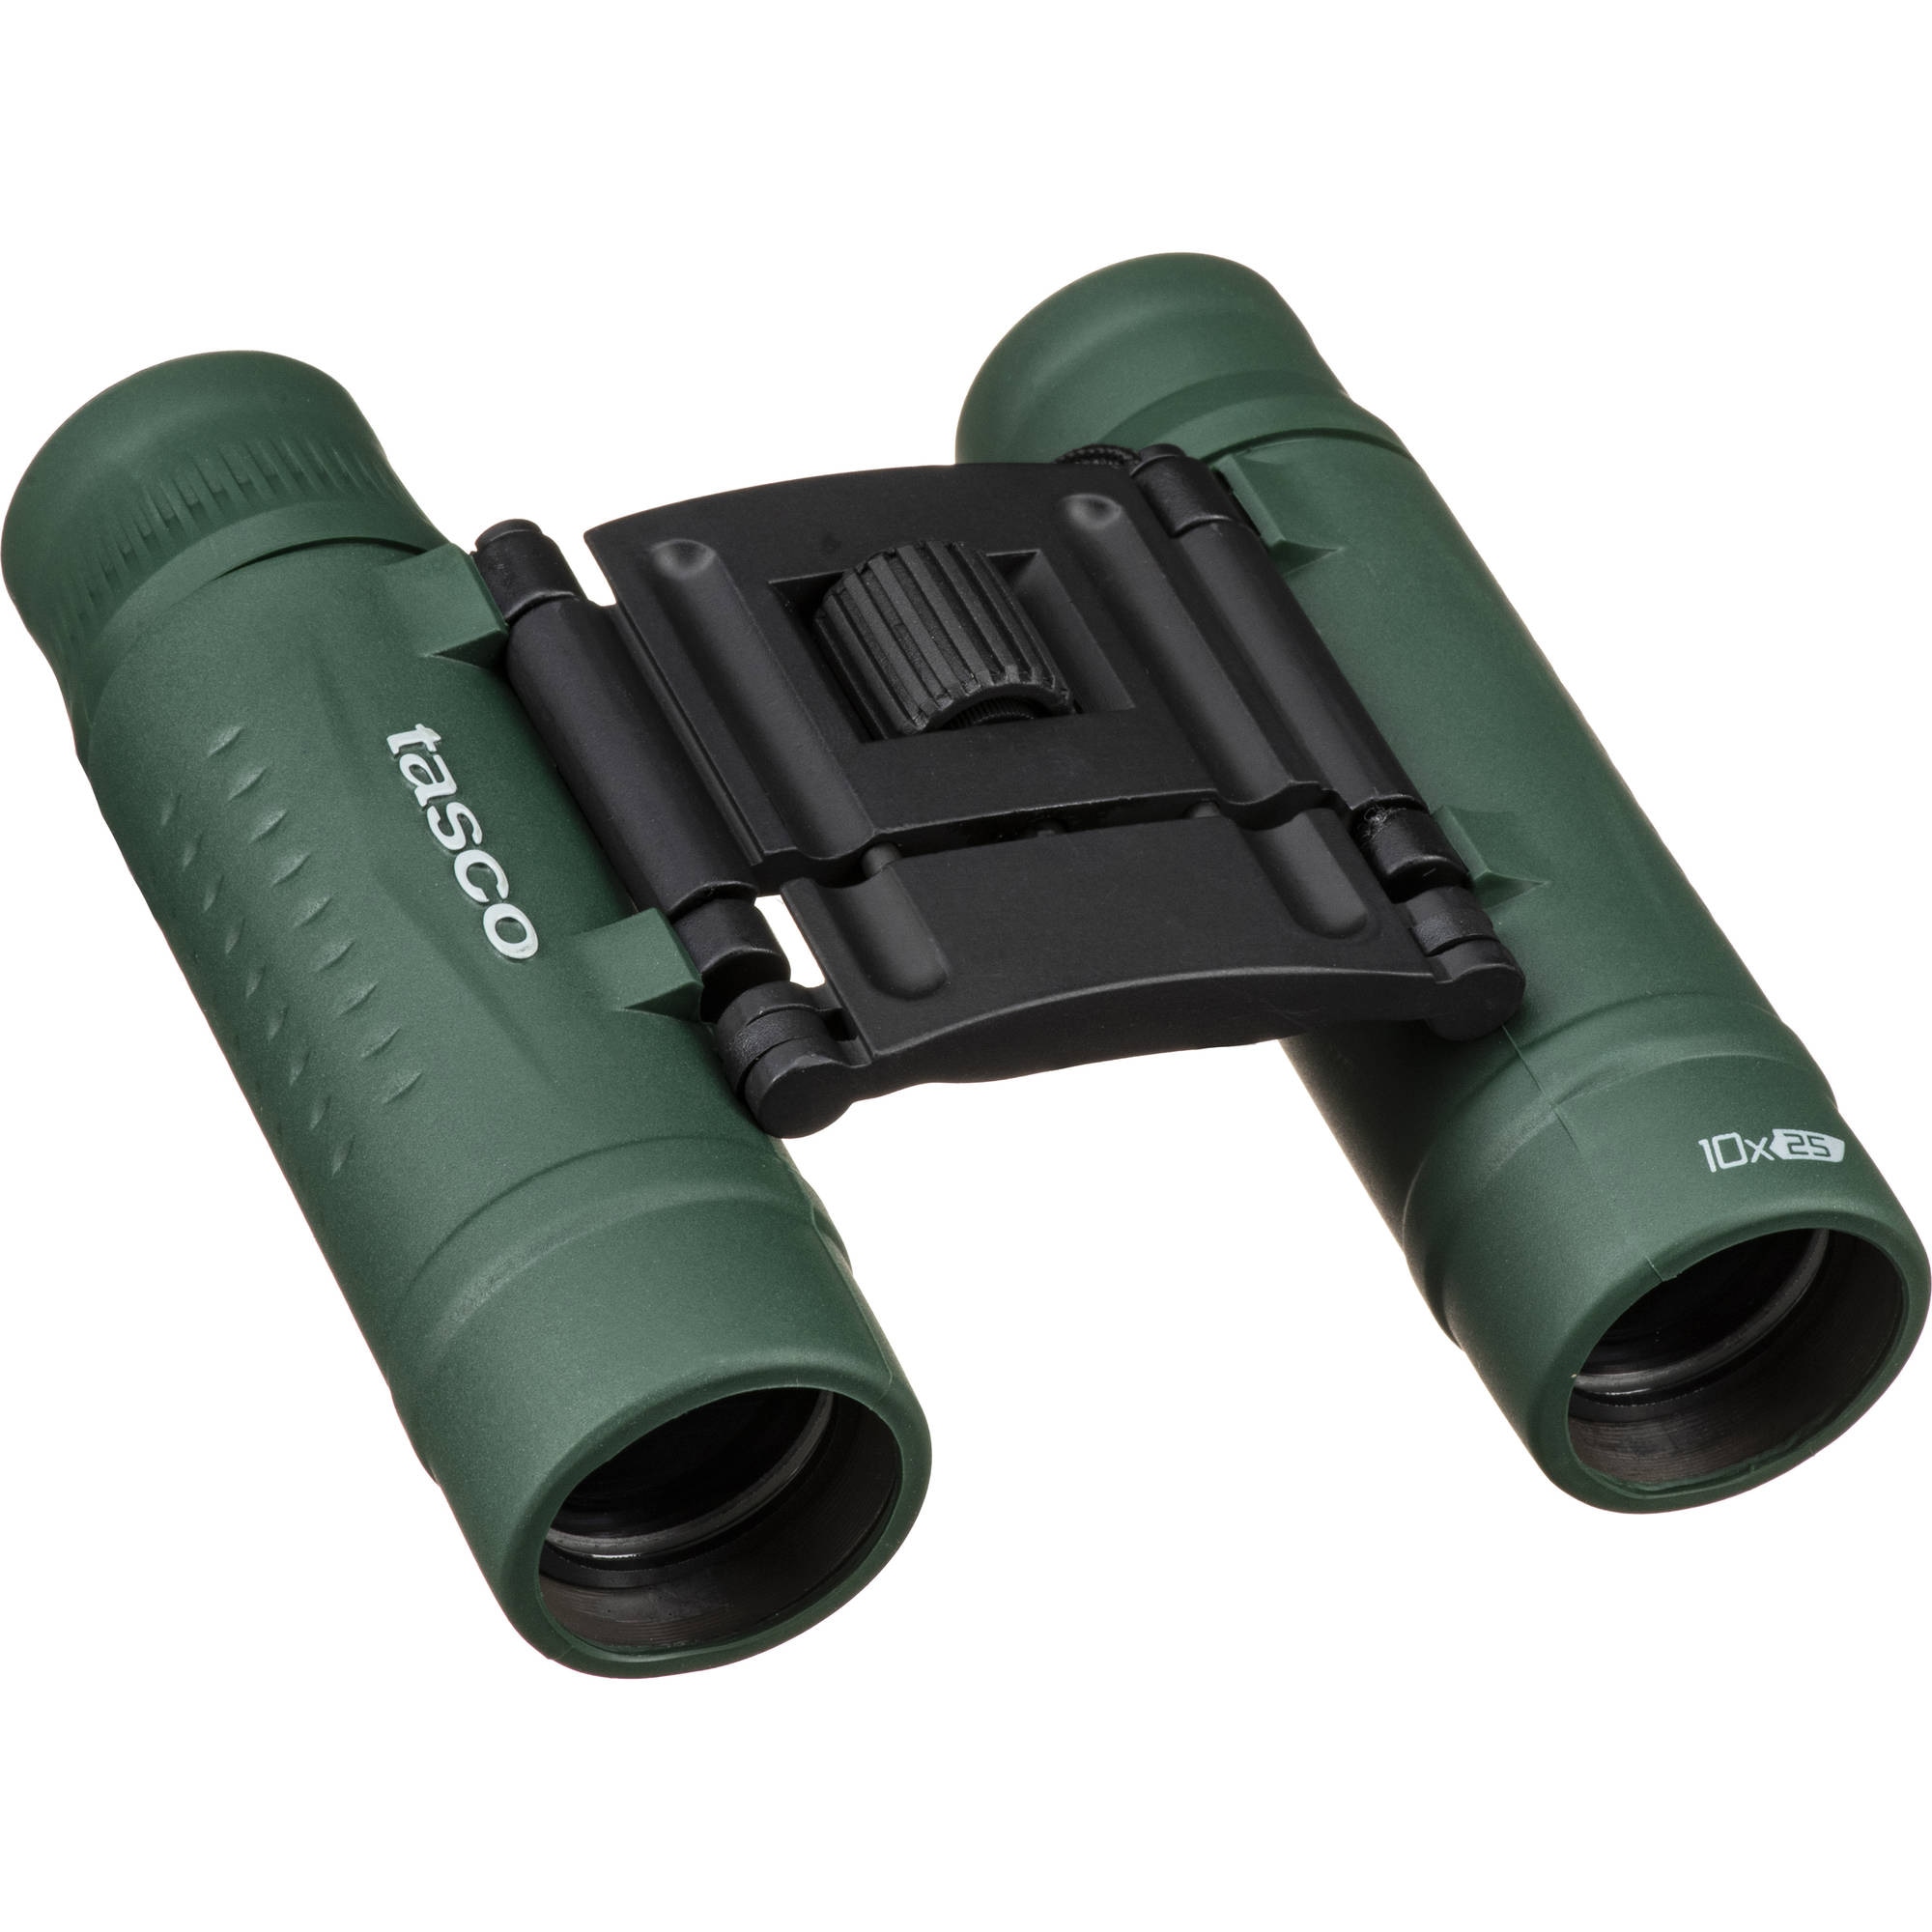 10x25 Binocular Green